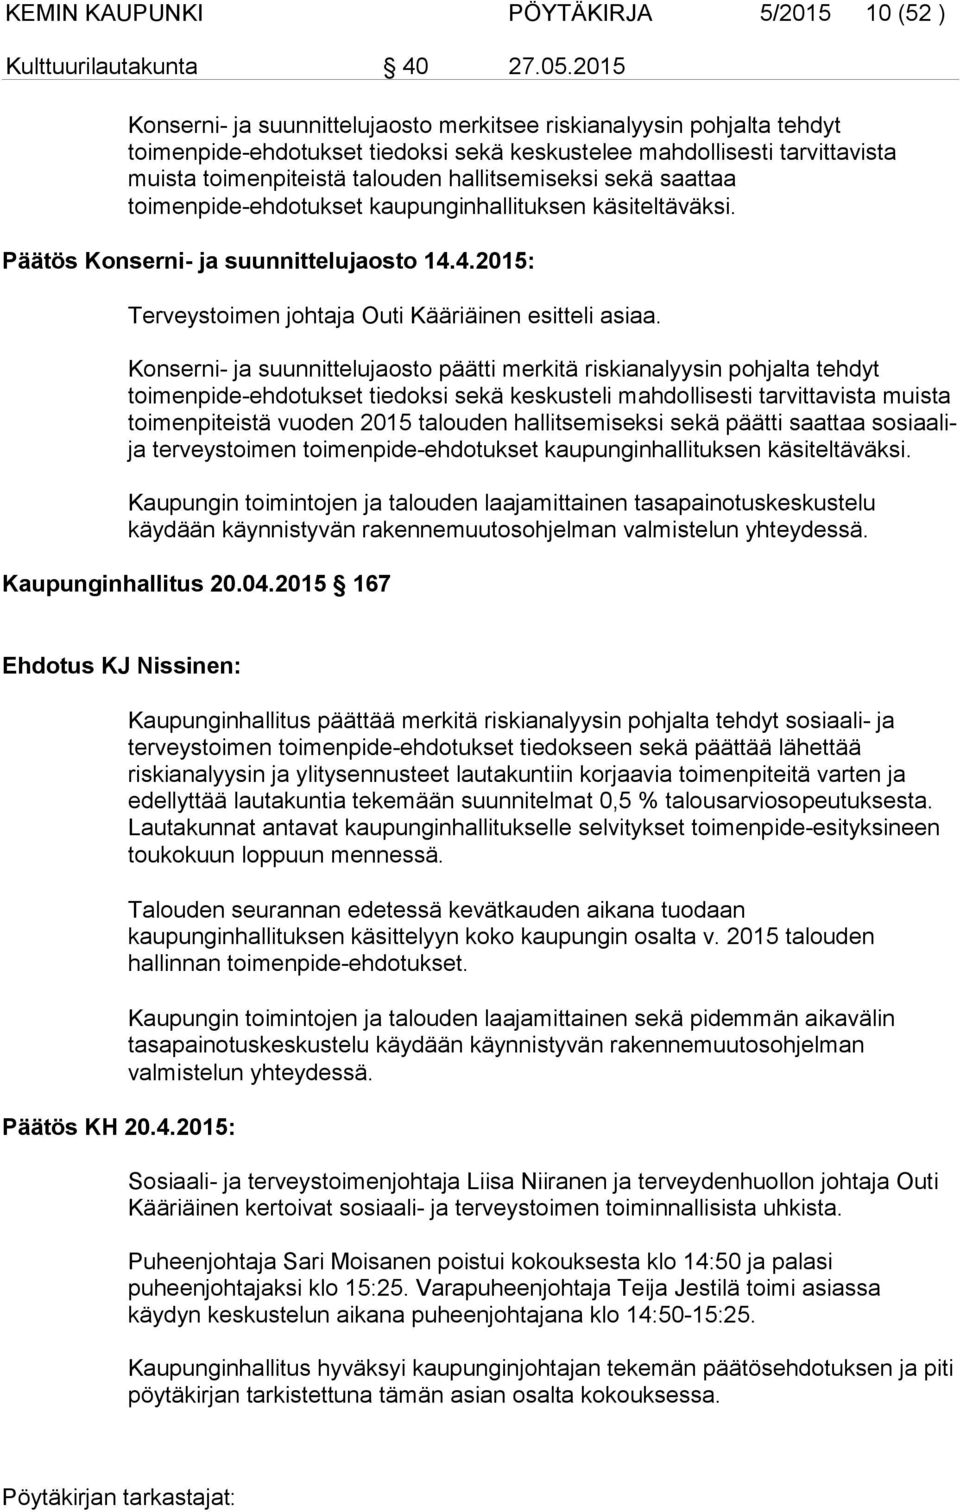 sekä saattaa toimenpide-ehdotukset kaupunginhallituksen käsiteltäväksi. Päätös Konserni- ja suunnittelujaosto 14.4.2015: Terveystoimen johtaja Outi Kääriäinen esitteli asiaa.